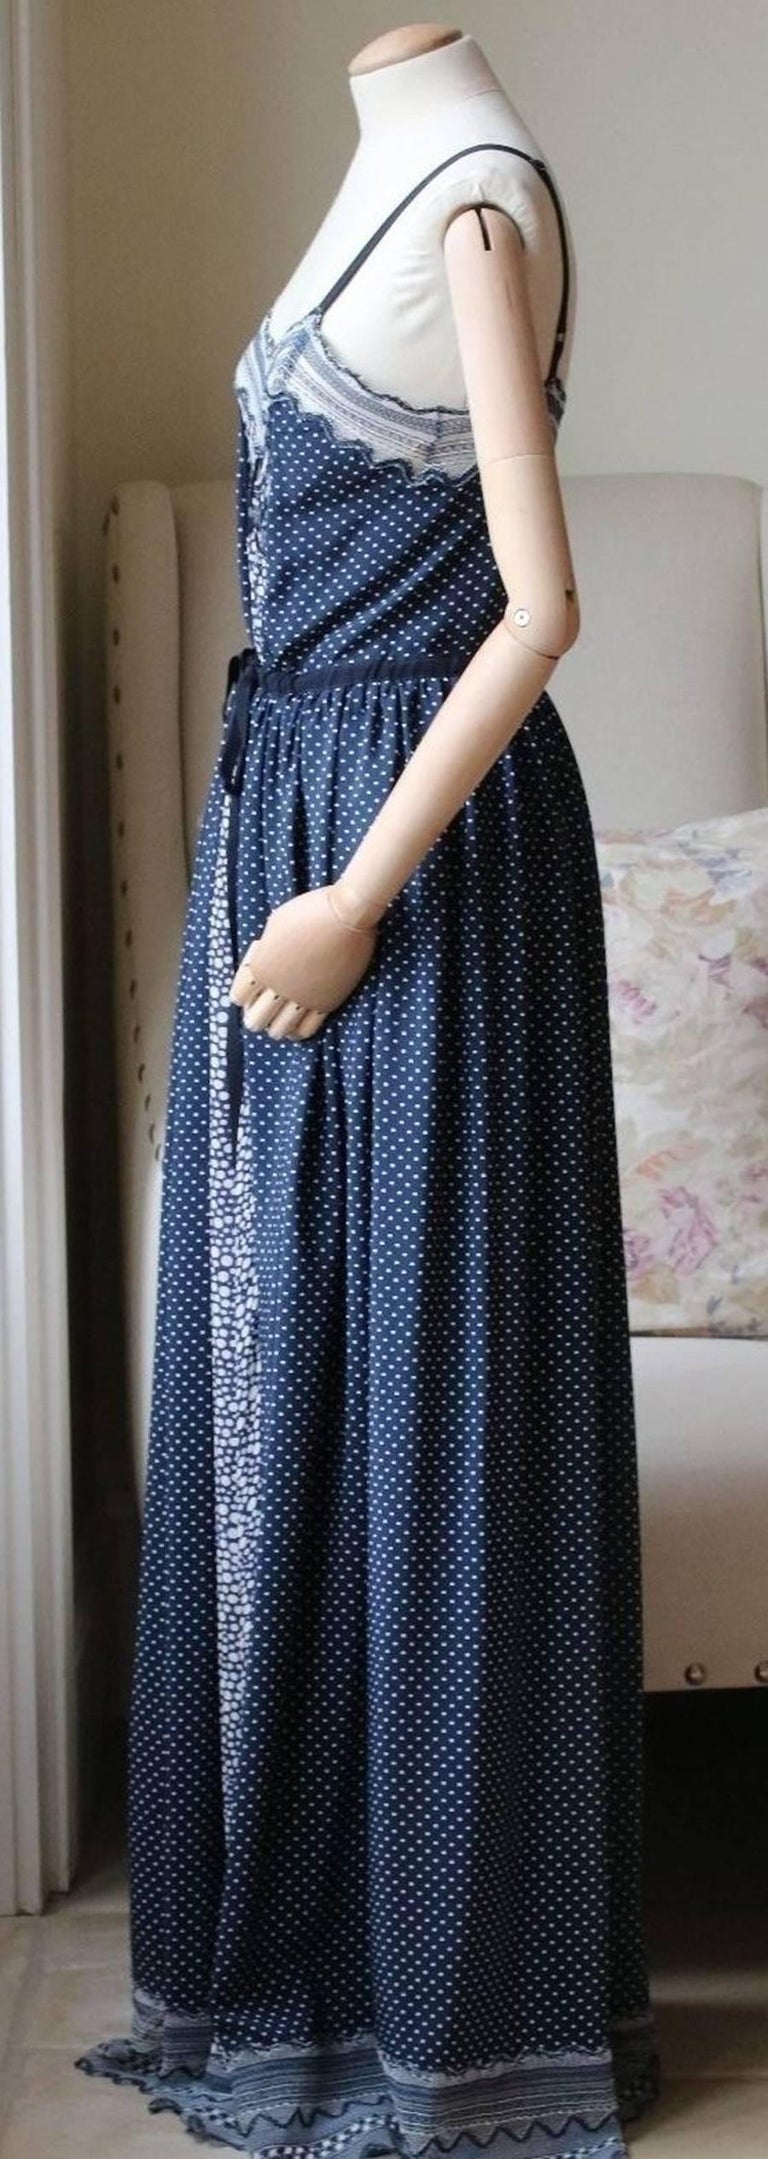 Women's or Men's Chloé Lace-Trimmed Printed Cotton Blend Crepe de Chine Maxi Dress For Sale